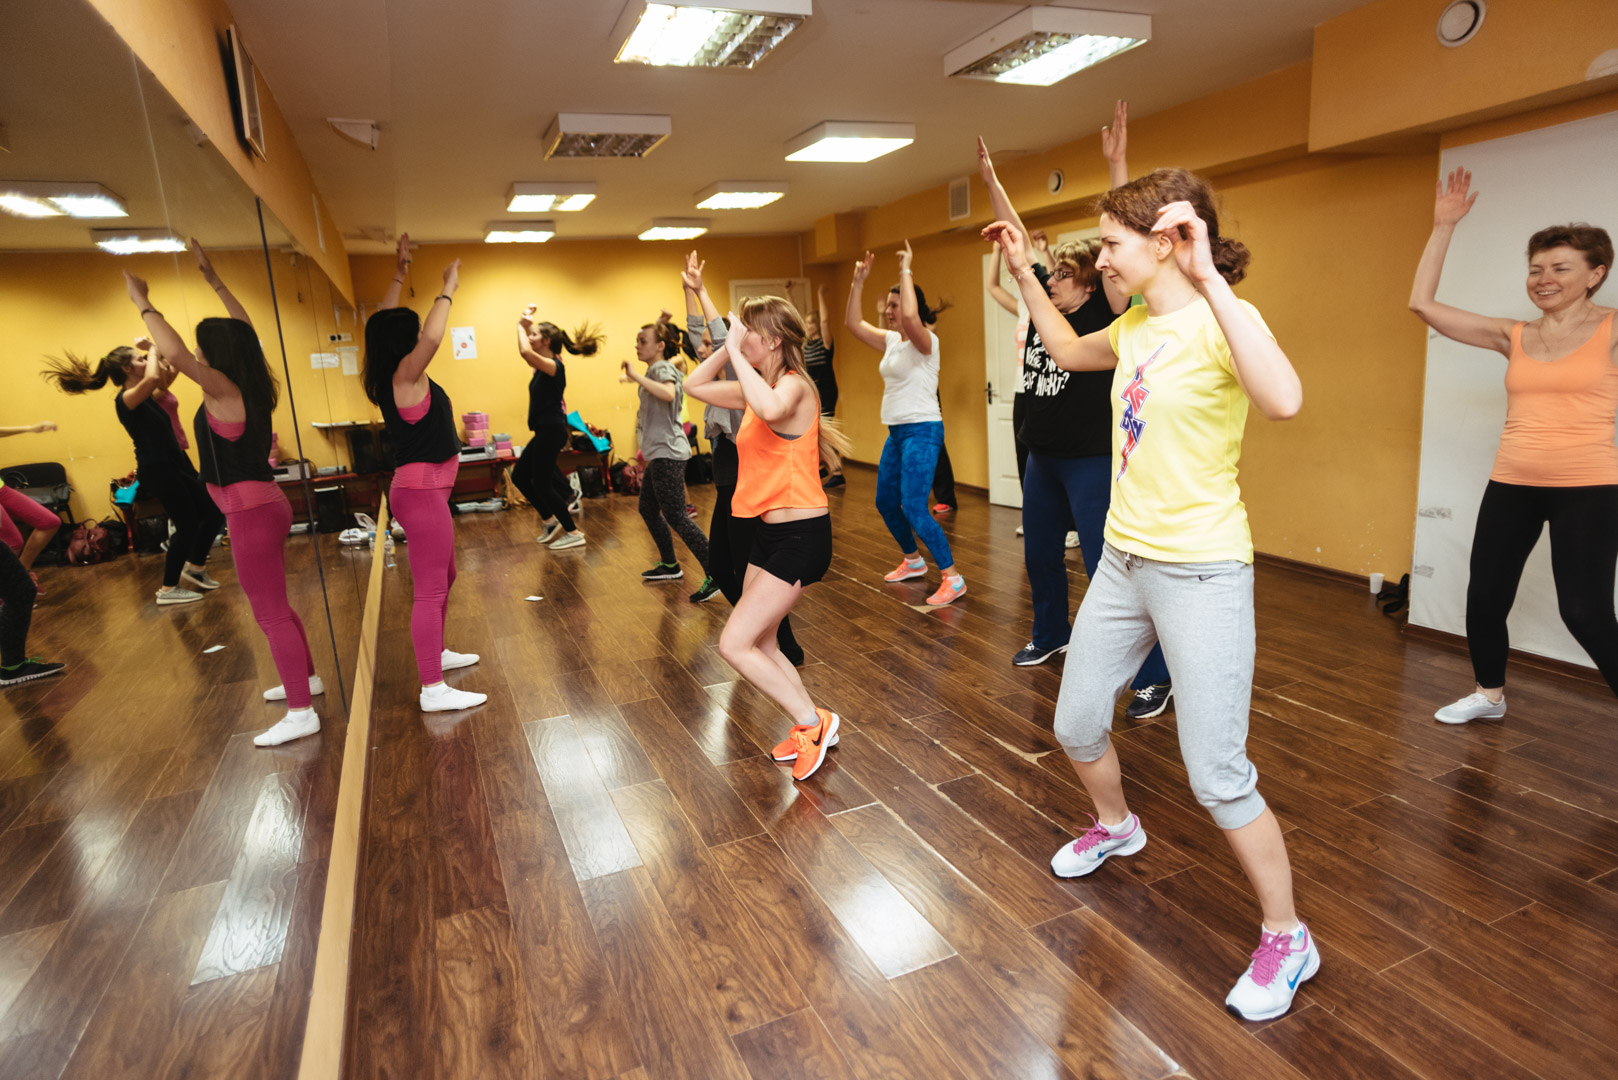 Тренировка танцевальная для похудения в домашних условиях